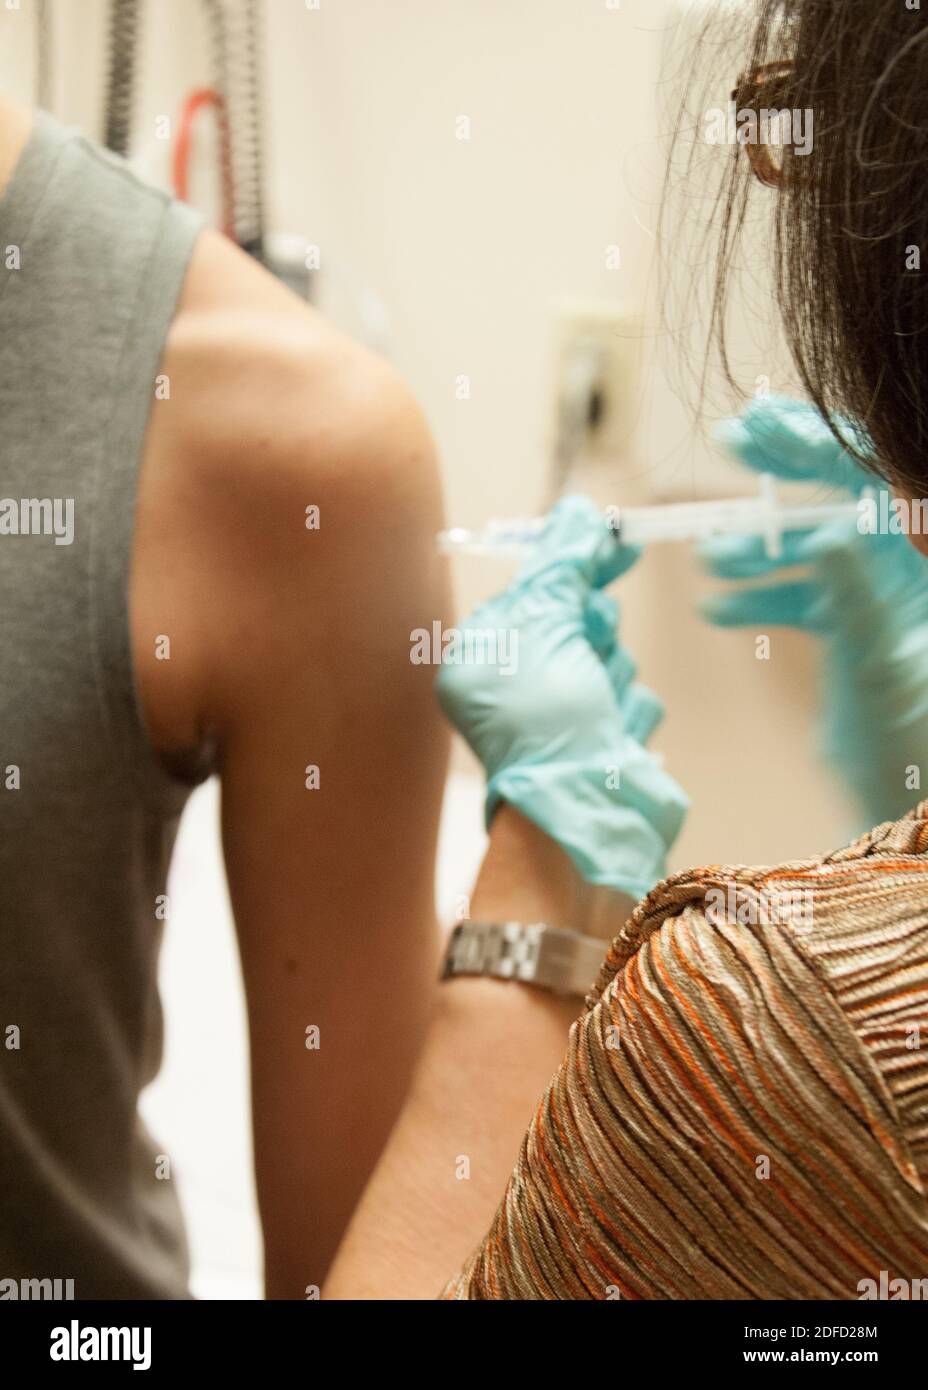 El participante en el estudio recibe la vacuna antibola de niaid/gsk Foto de stock